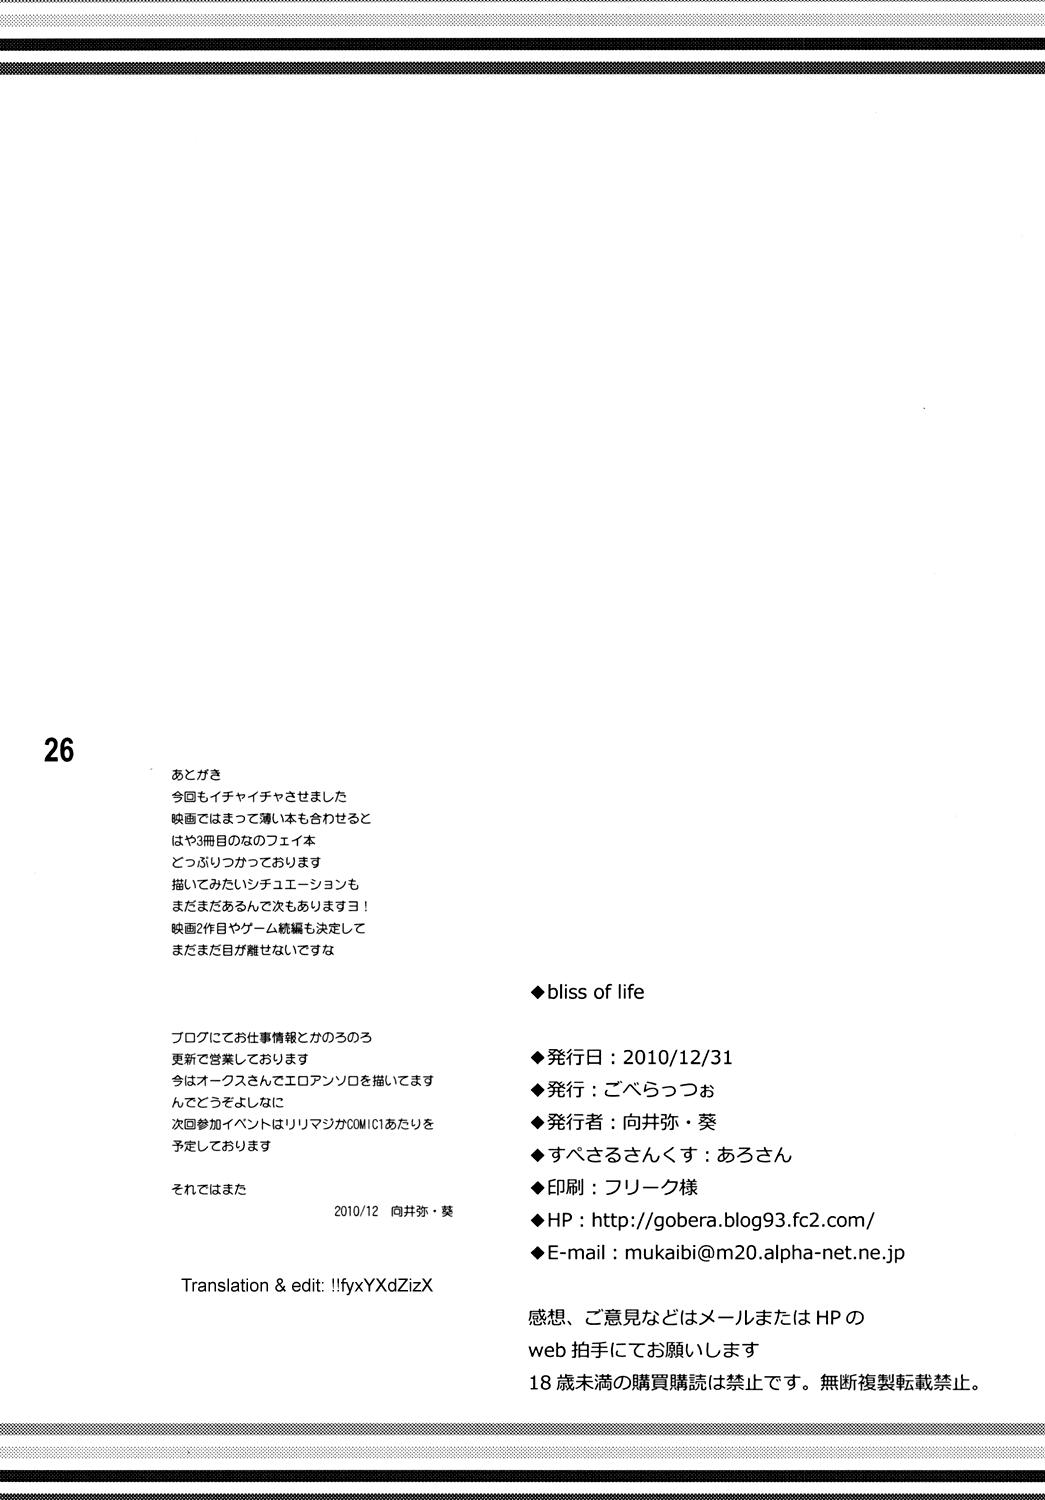 Gay Brownhair bliss of life - Mahou shoujo lyrical nanoha Enema - Page 25